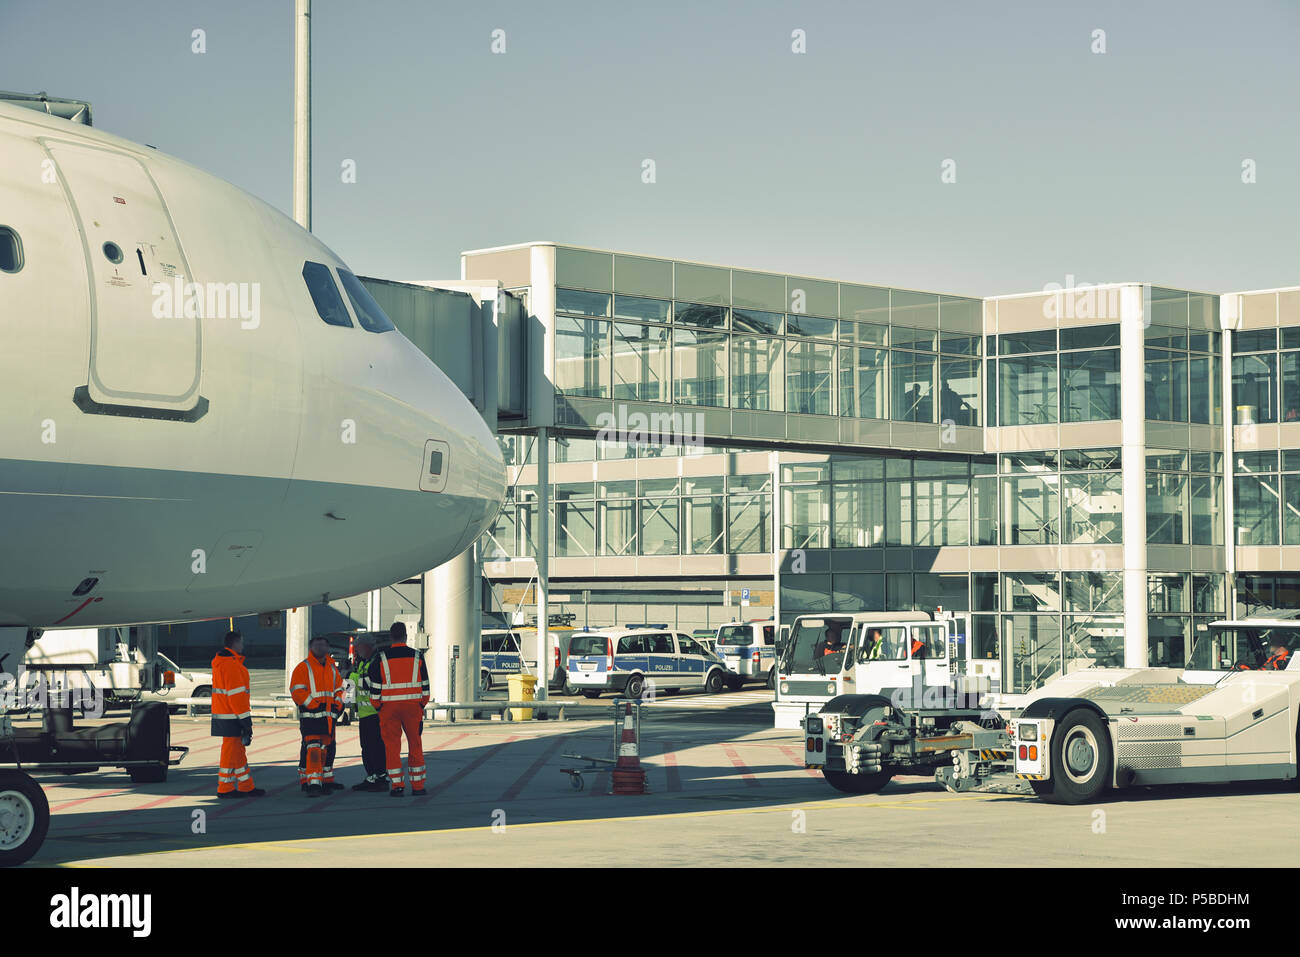 Manipolazione di un aeromobile presso il terminale di un aeroporto prima del decollo Foto Stock